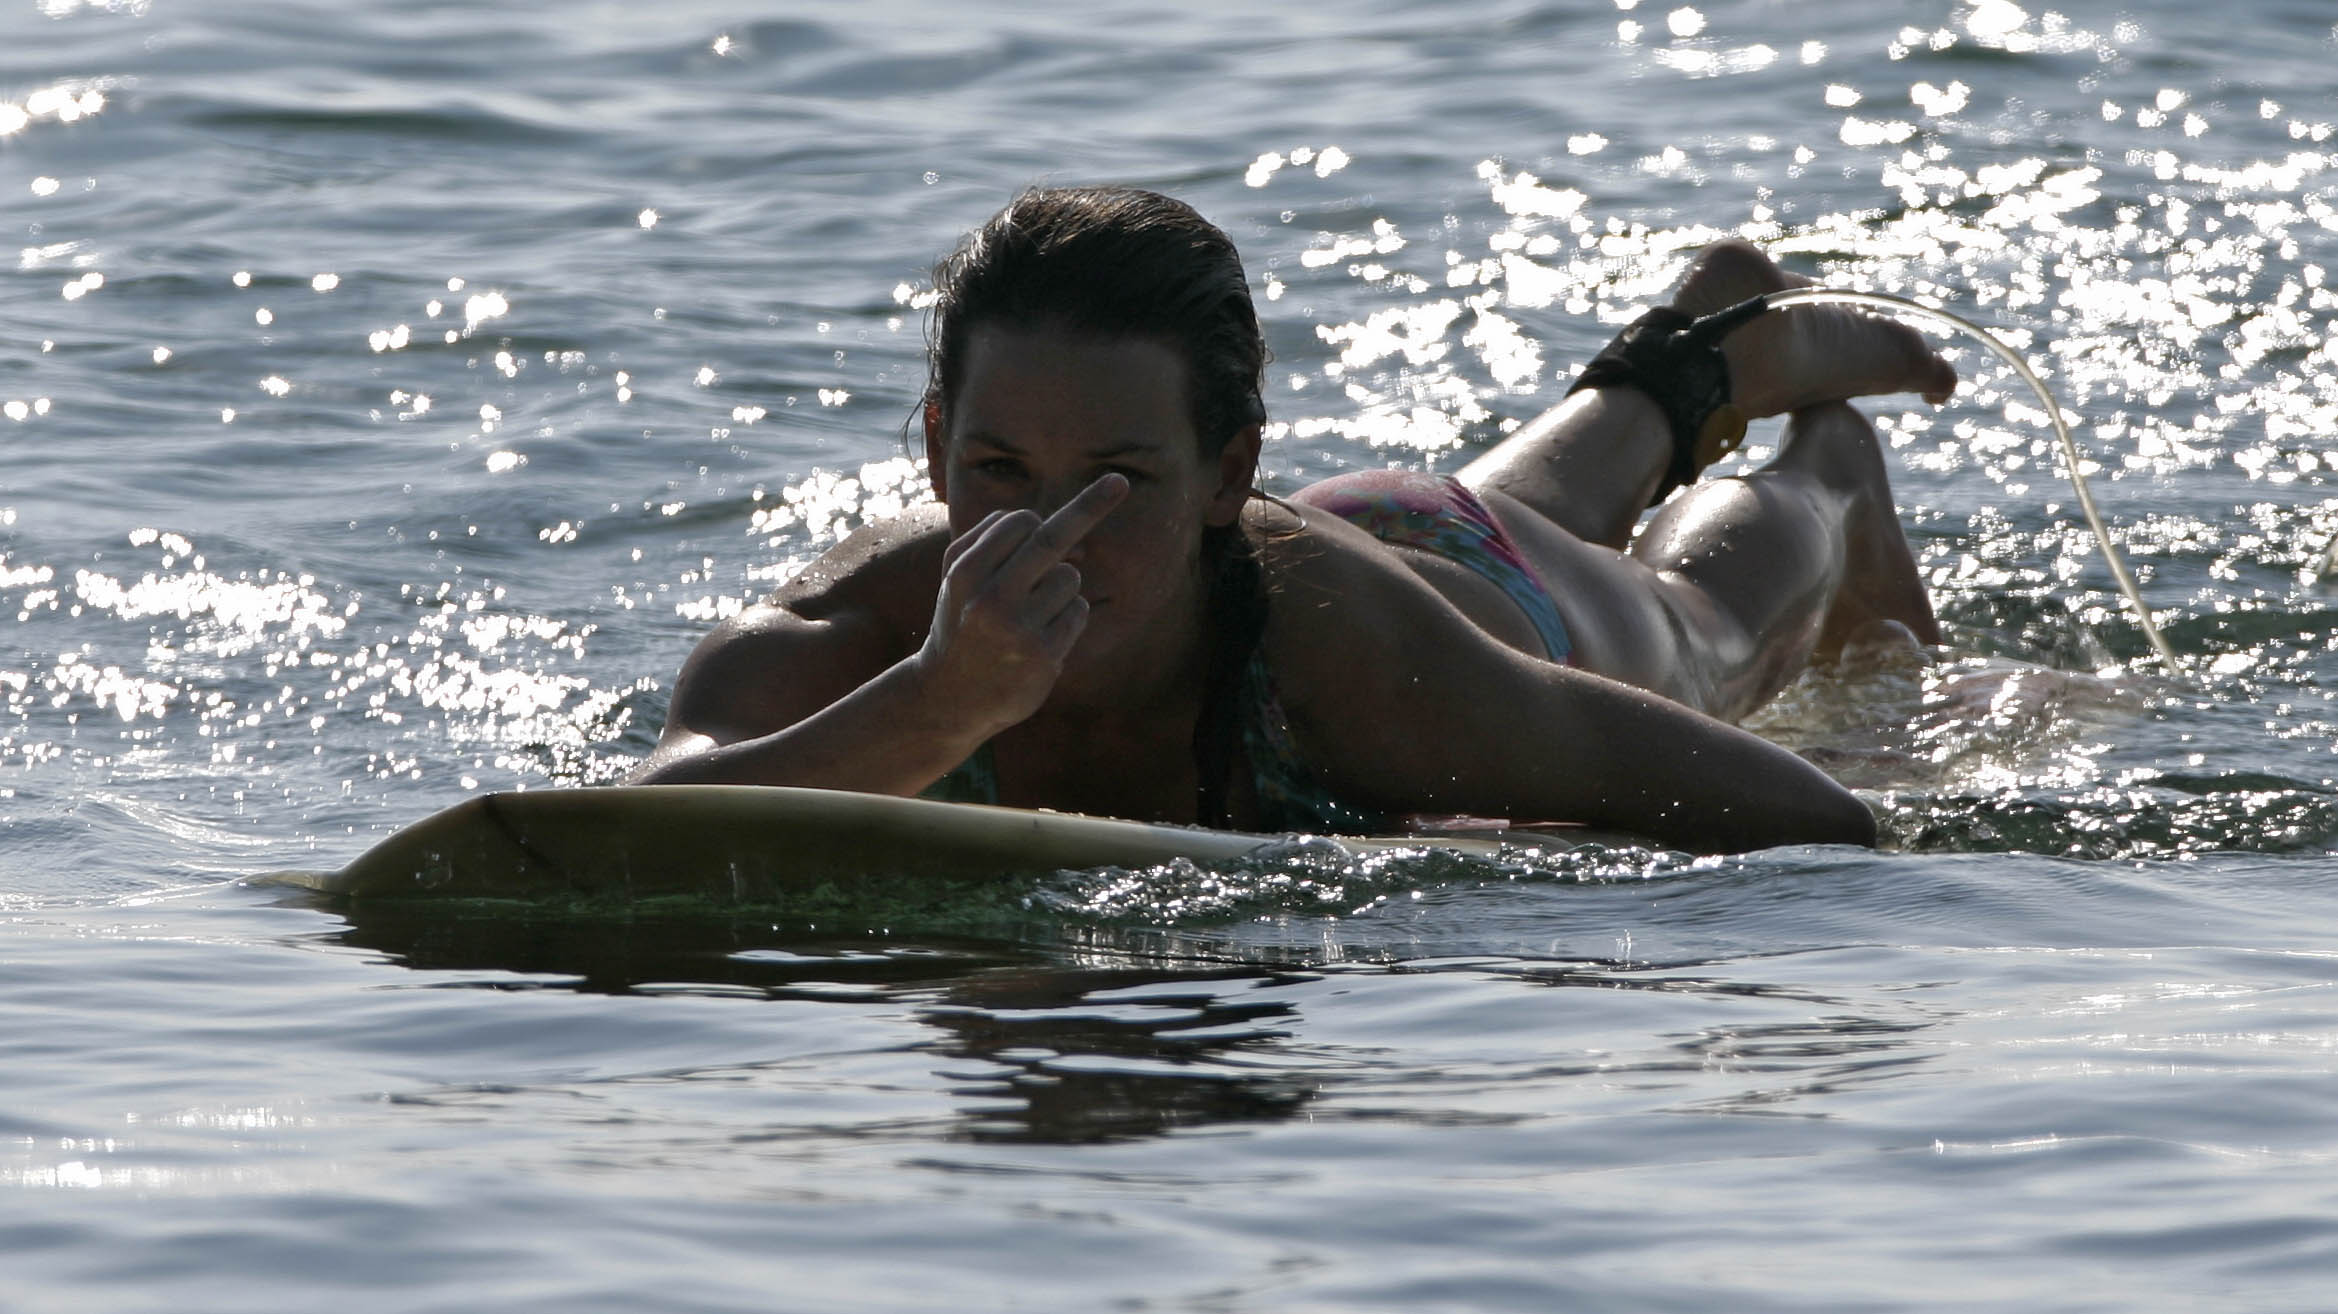 PixelBomb.com - Evangeline Lilly exposed her bikini body - exposed pics.